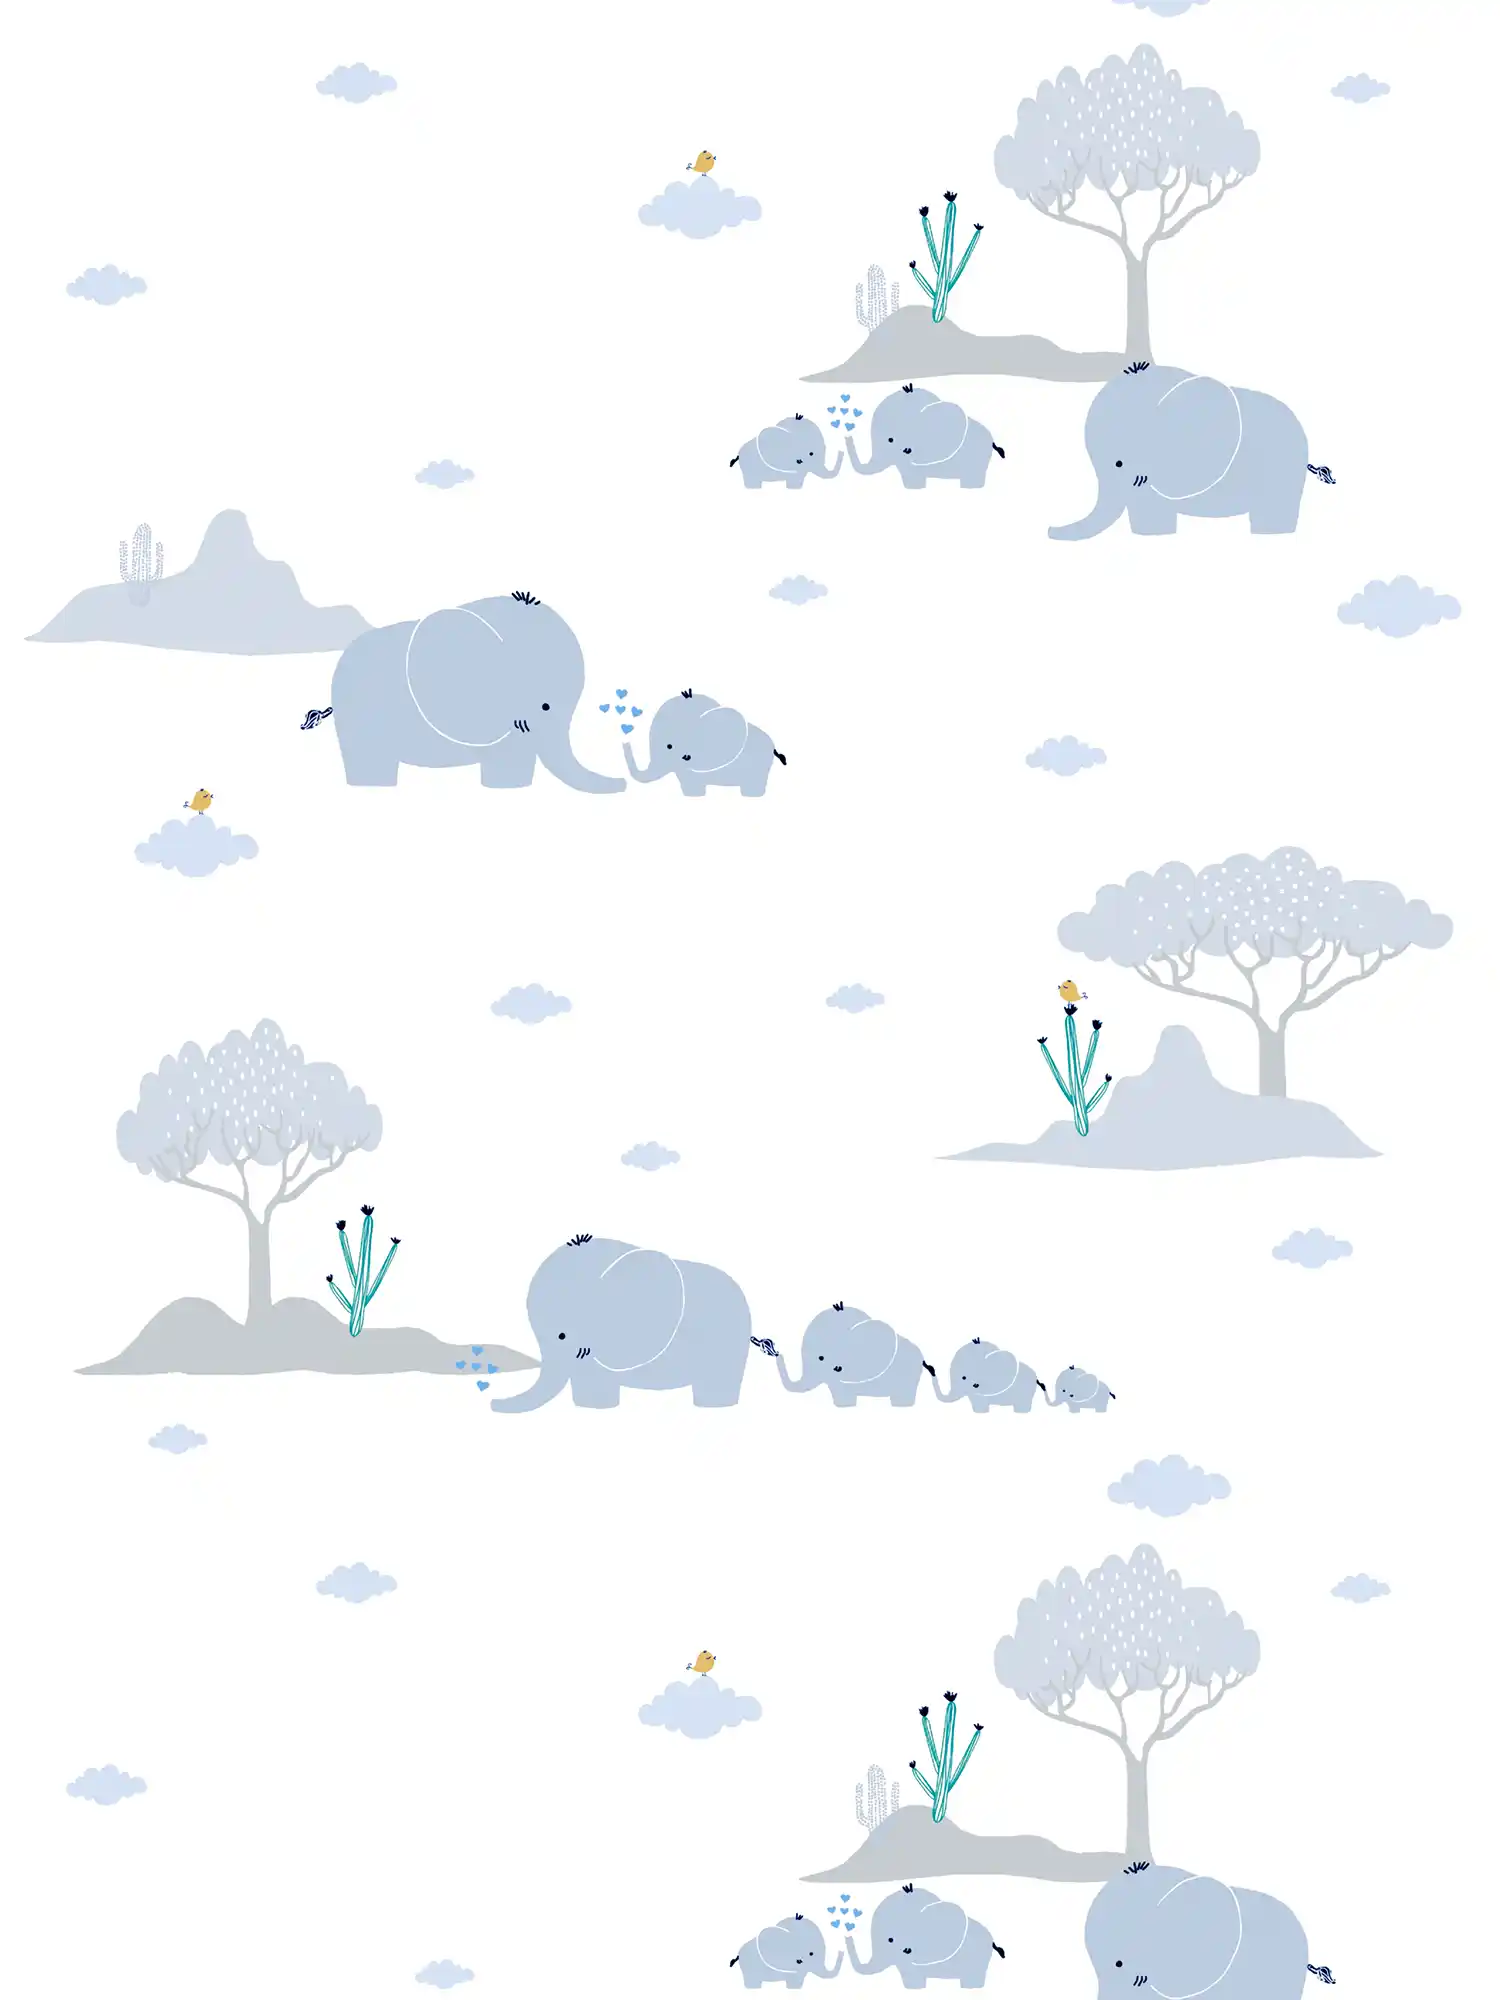 Papel pintado de habitación infantil niños elefantes y paisaje - azul, gris, blanco
